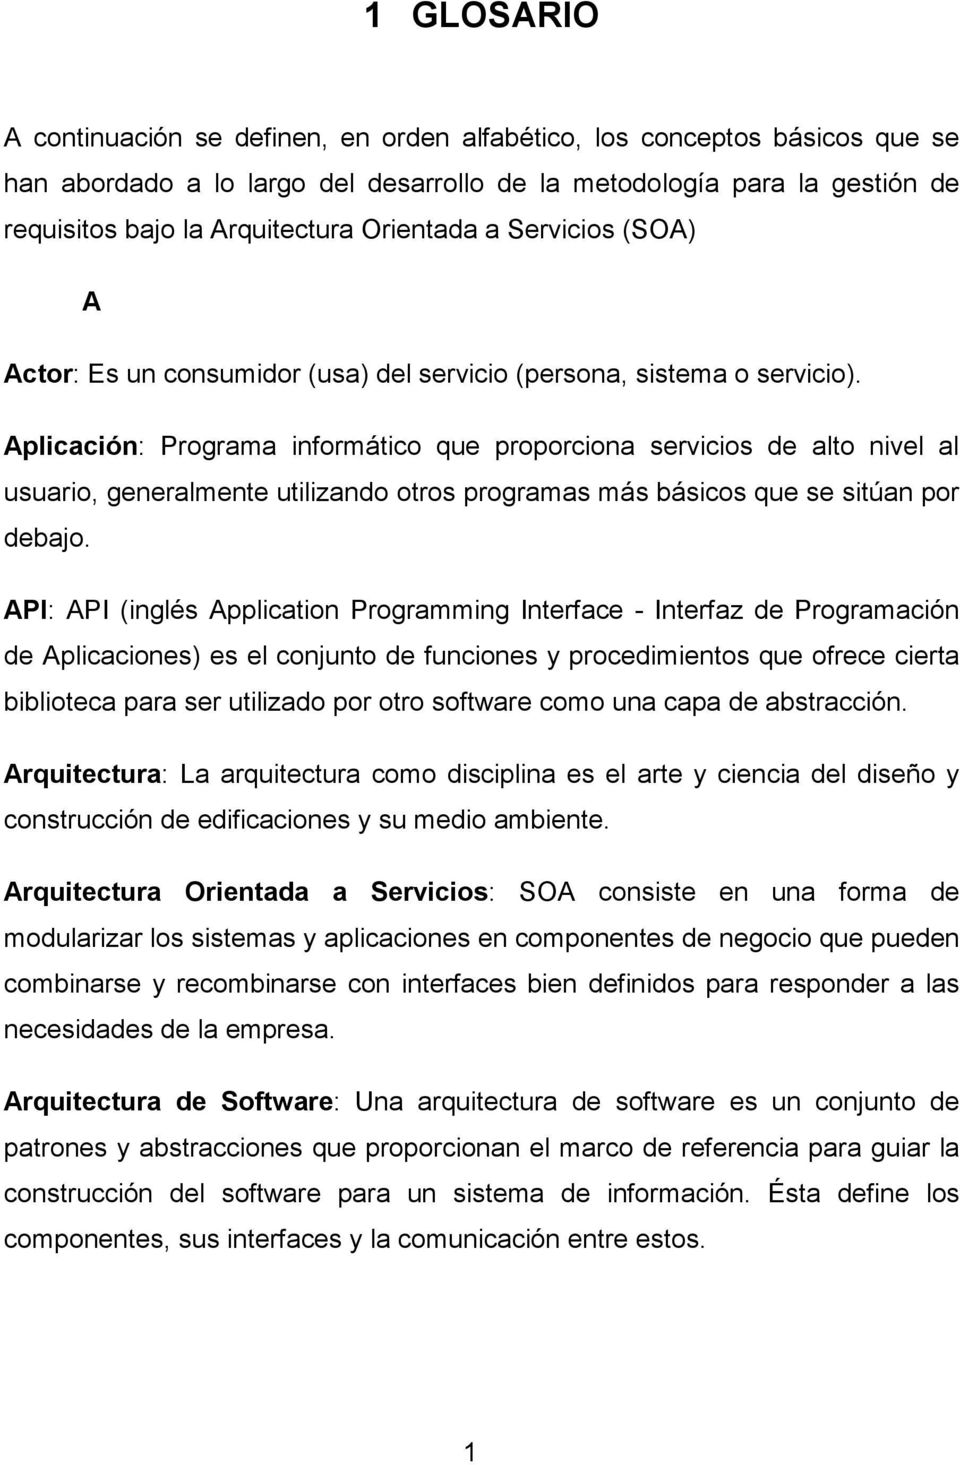 Aplicación: Programa informático que proporciona servicios de alto nivel al usuario, generalmente utilizando otros programas más básicos que se sitúan por debajo.